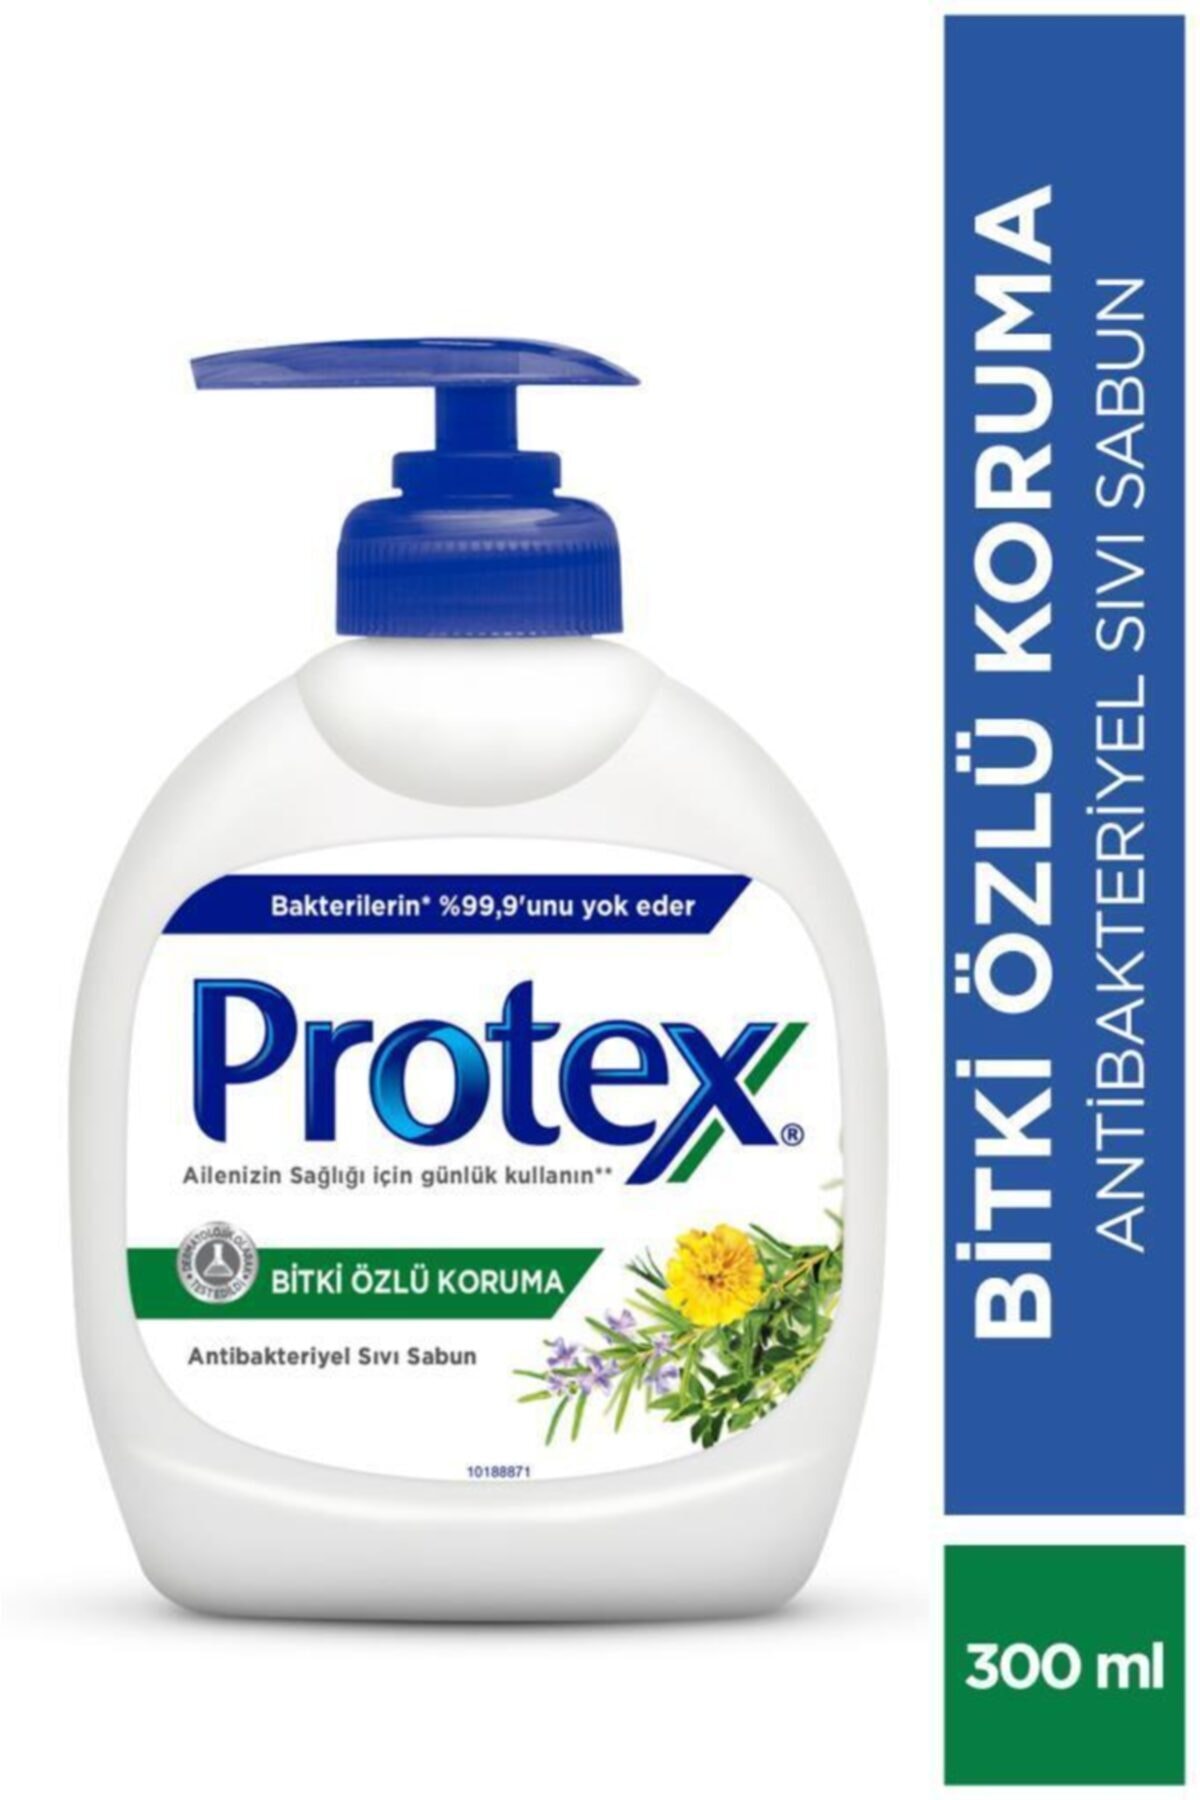 protex bitki ozlu koruma antibakteriyel sivi sabun 300 ml fiyati yorumlari trendyol